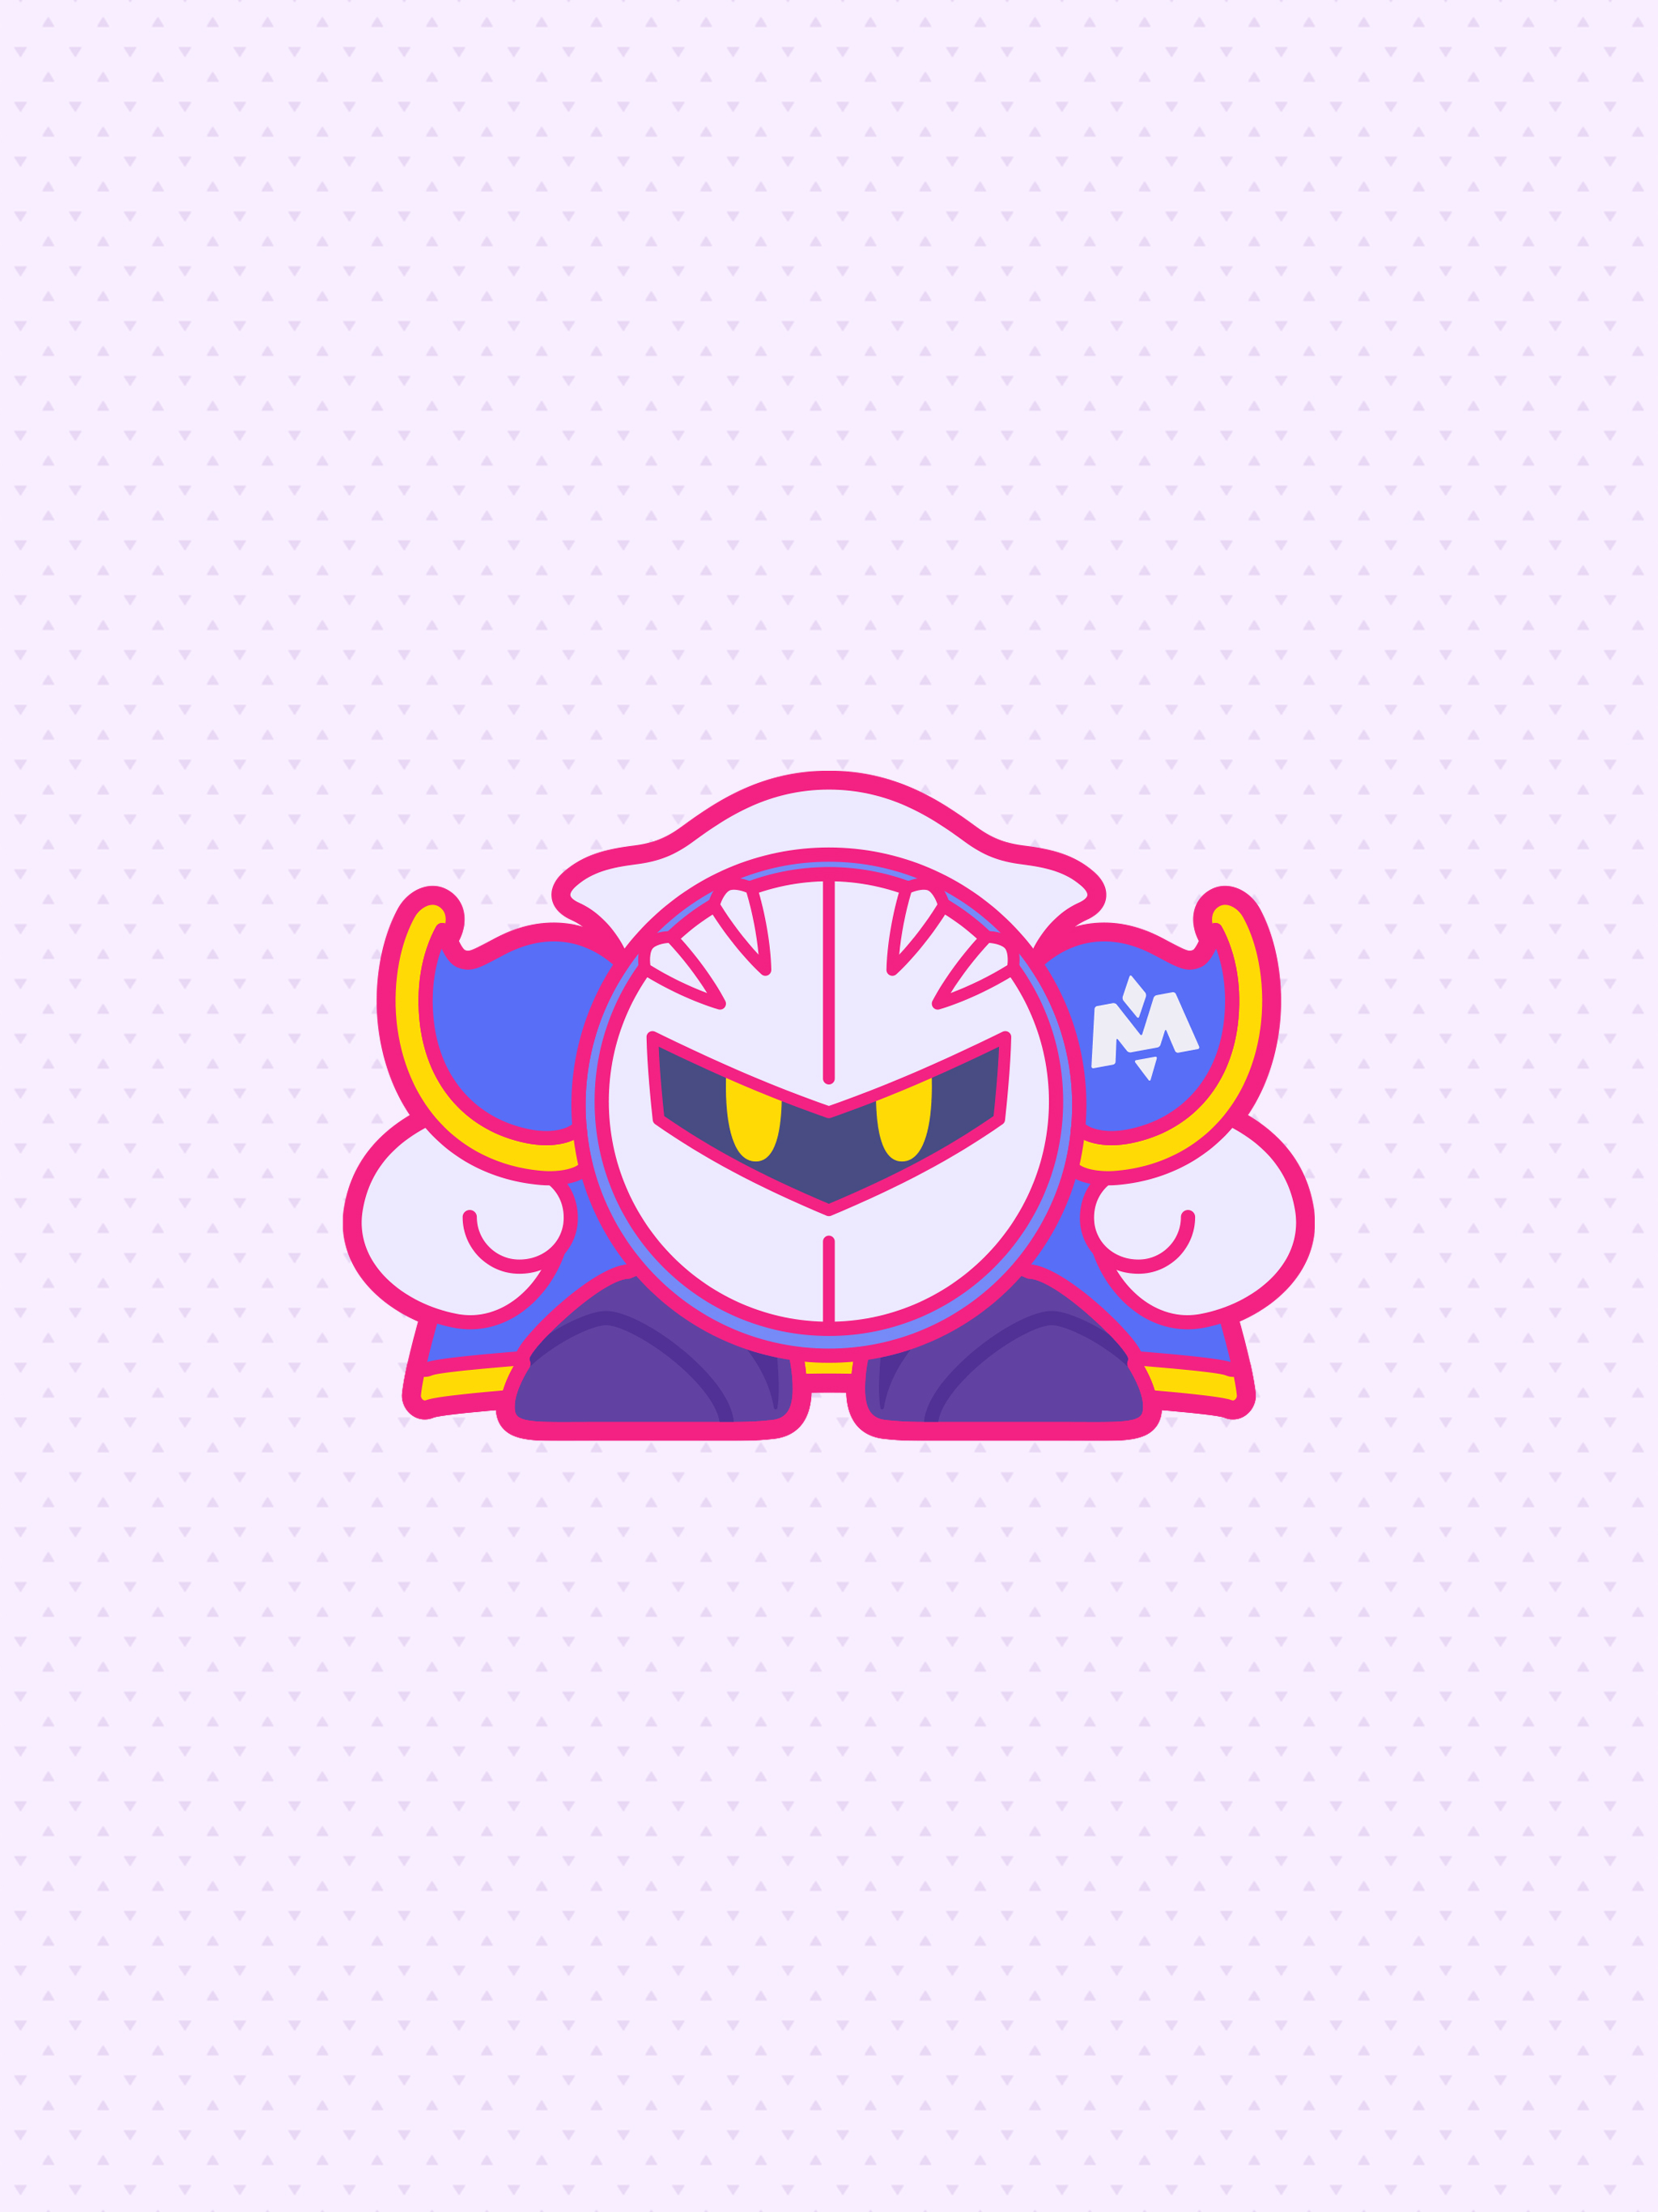 Anime [Kirby] Meta Knight Ver. 2